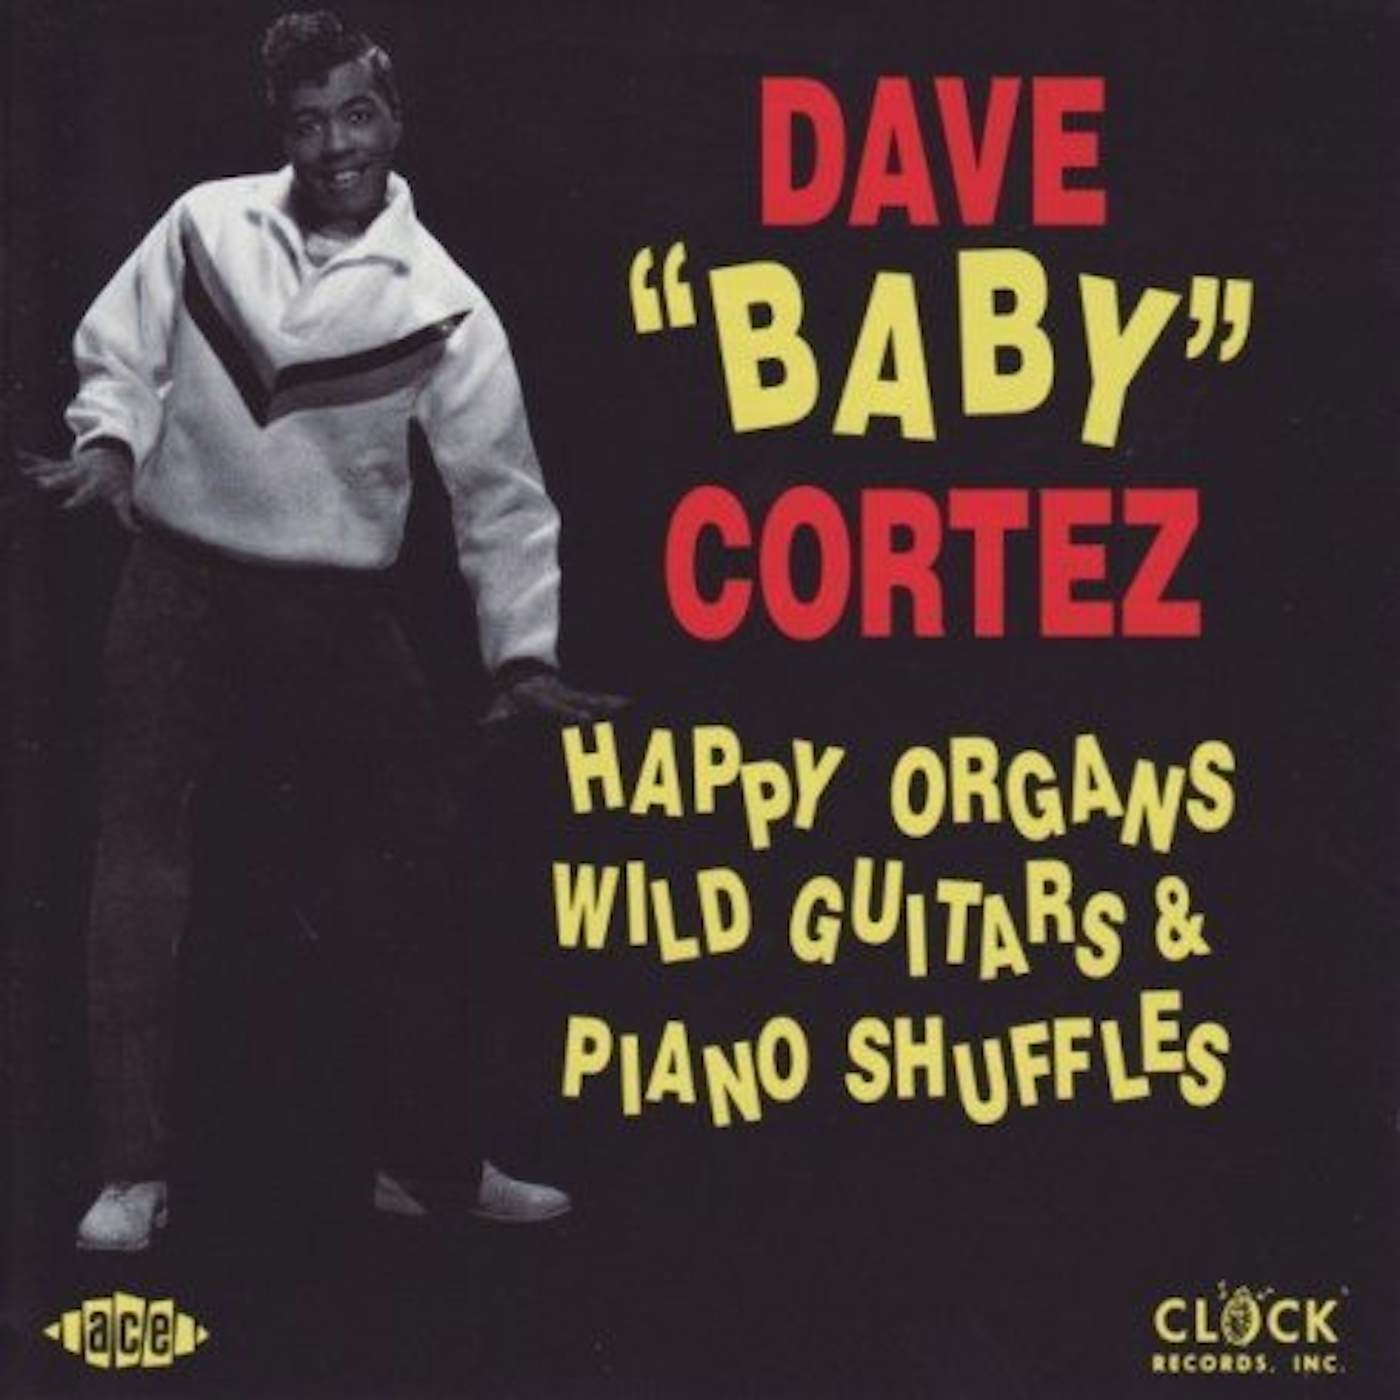 Dave "Baby" Cortez HAPPY ORGANS WILD GUITAR CD